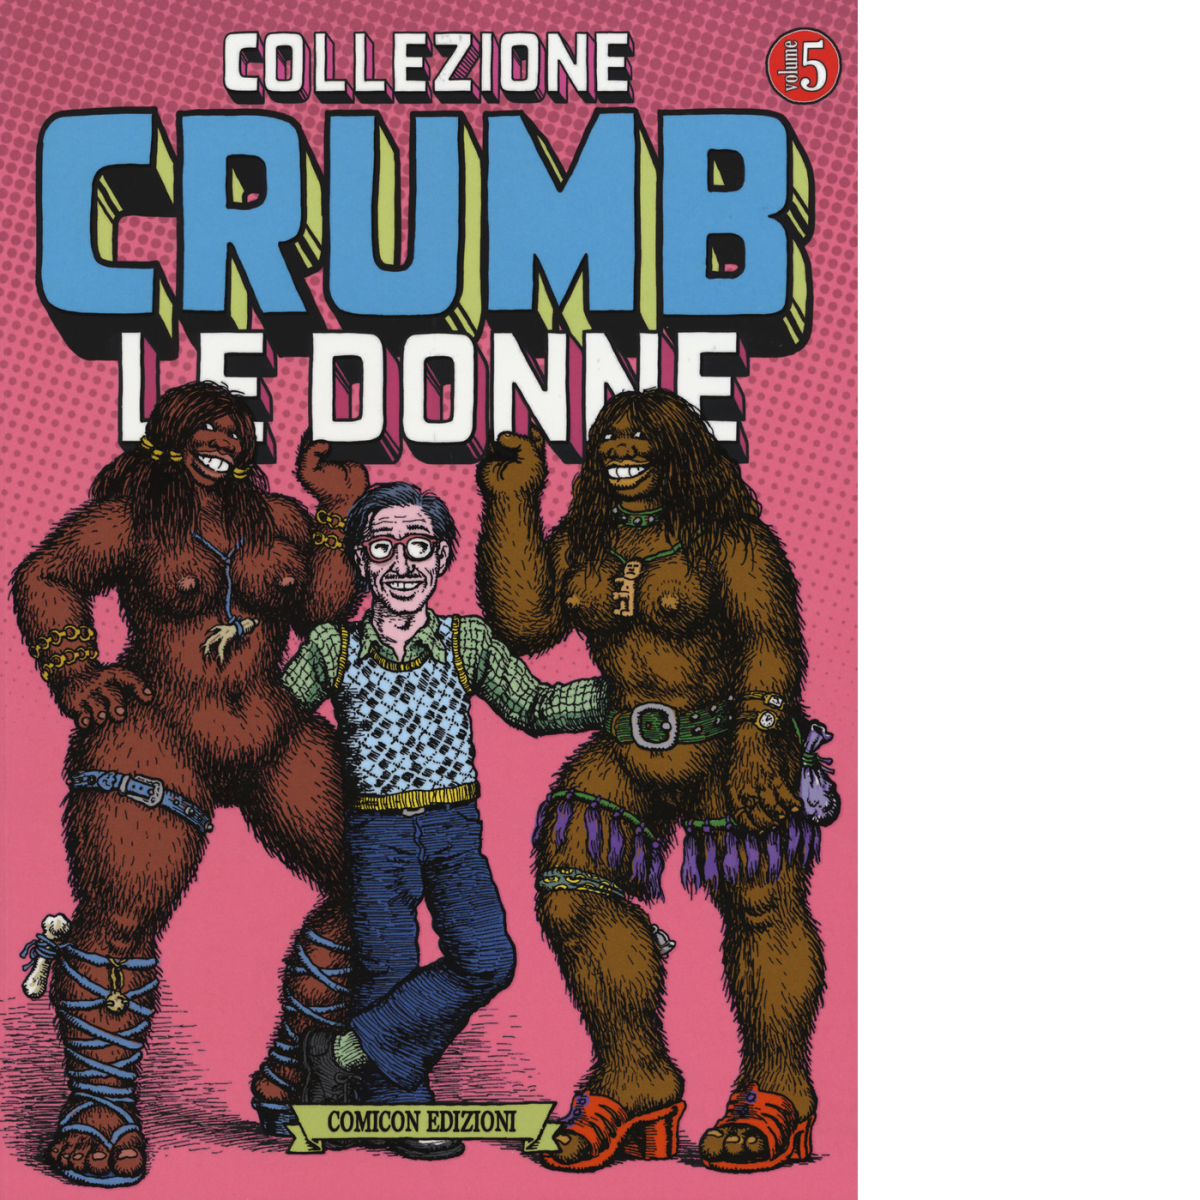 LE DONNE Collezione Crumb - Robert Crumb - Comicon, 2018